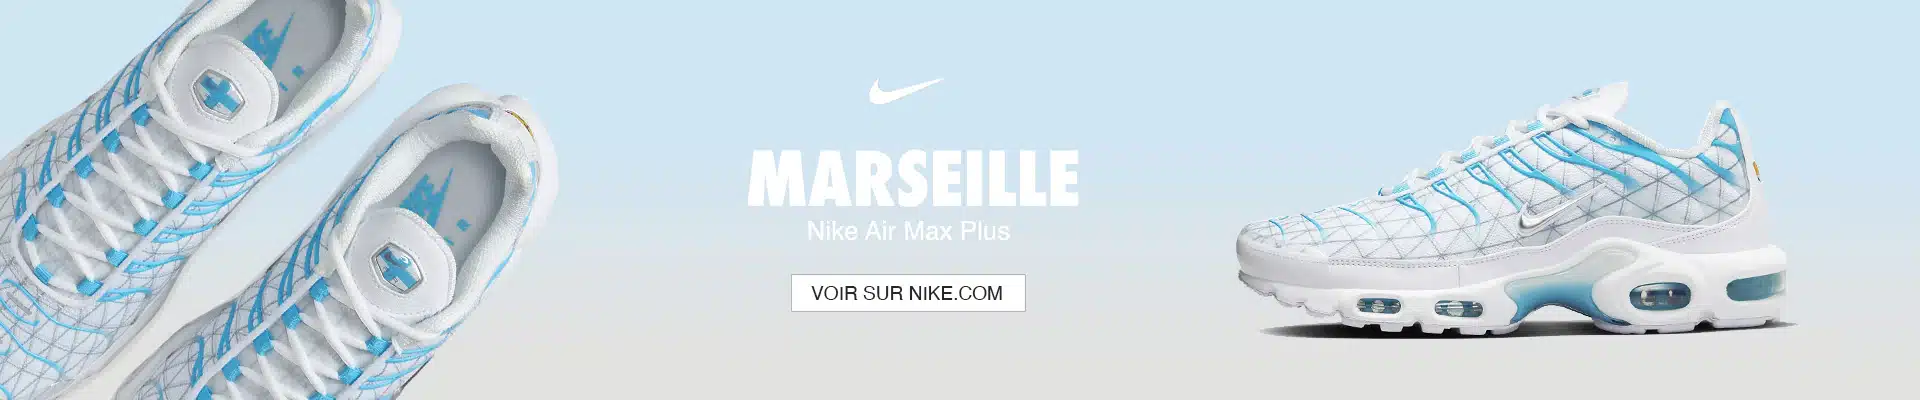 Nike Air Max Plus Marseille